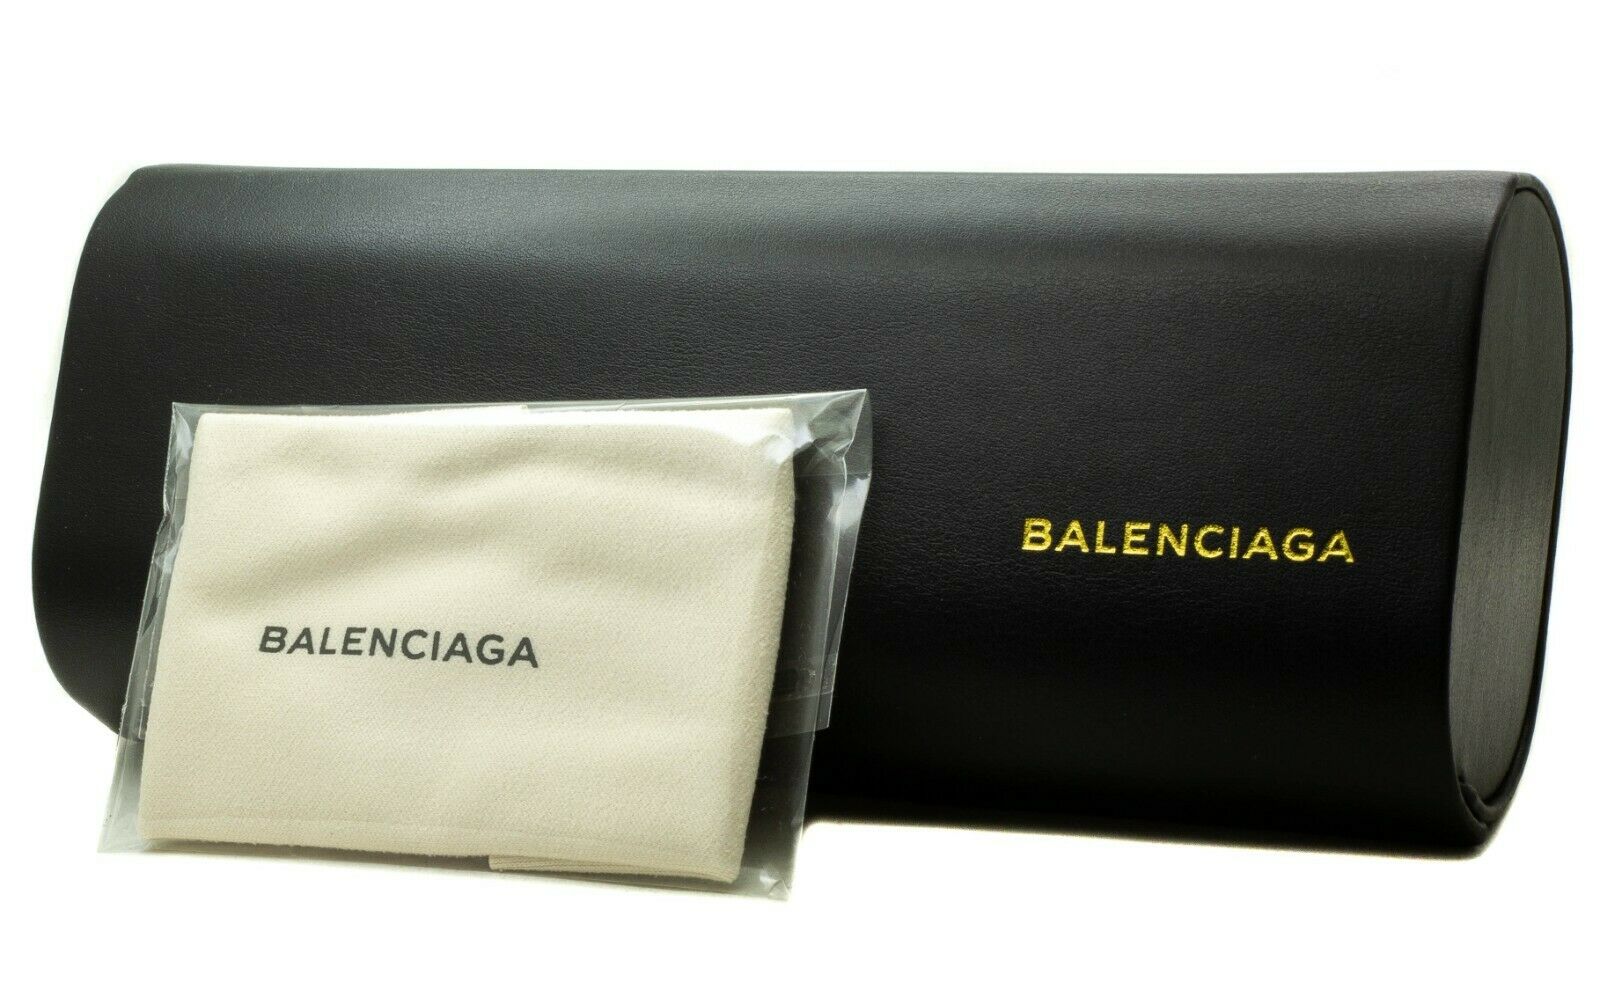 BALENCIAGA BA 5041 047 54mm Eyewear FRAMES RX Optical Eyeglasses BNIB New -Italy